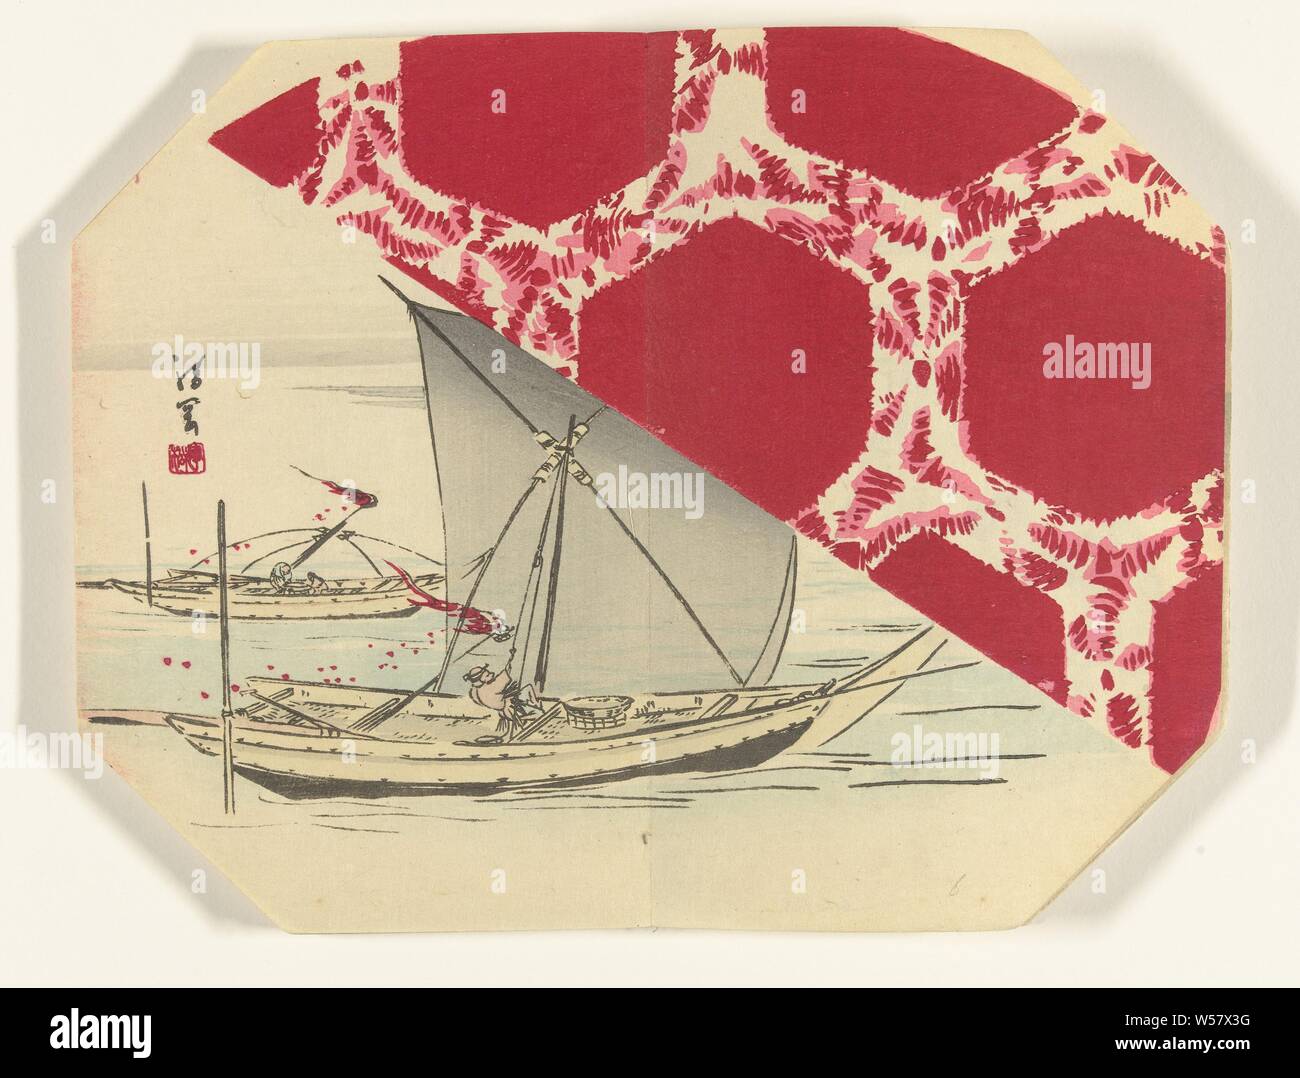 Les bateaux de pêche de nuit, octogonale imprimer dans l'album avec 39 tirages., Ayaoka Yûshin (mentionné sur l'objet), Japon, 1880 - 1890, gravure sur bois, papier couleur, h 223 mm × W 287 mm Banque D'Images